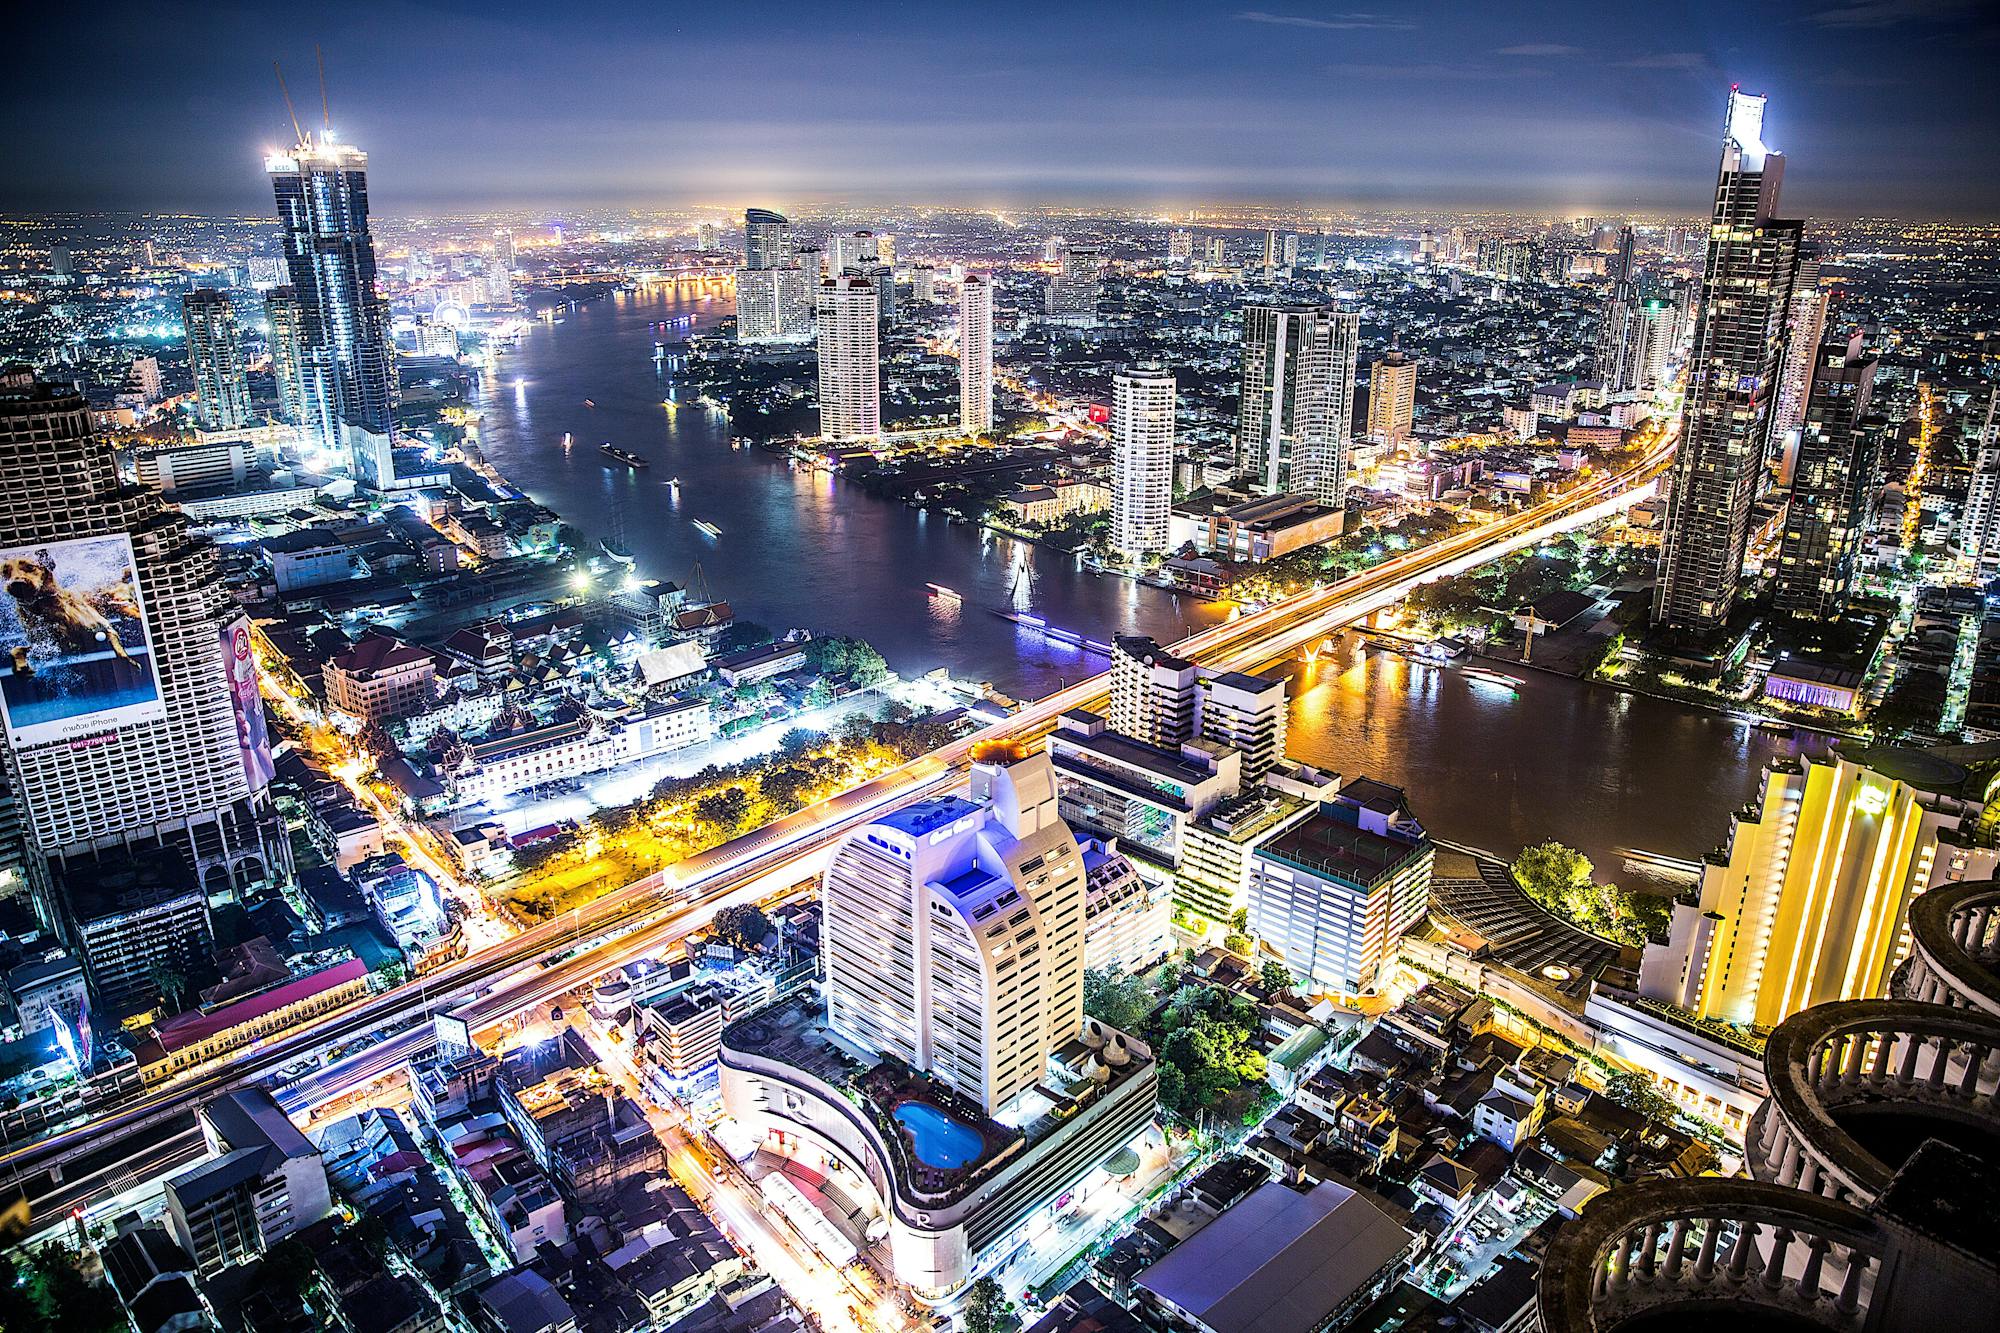 Skyline von Bangkok bei Nacht: Tausende Lichter, Wolkenkratzer und der Fluss Chao Phraya